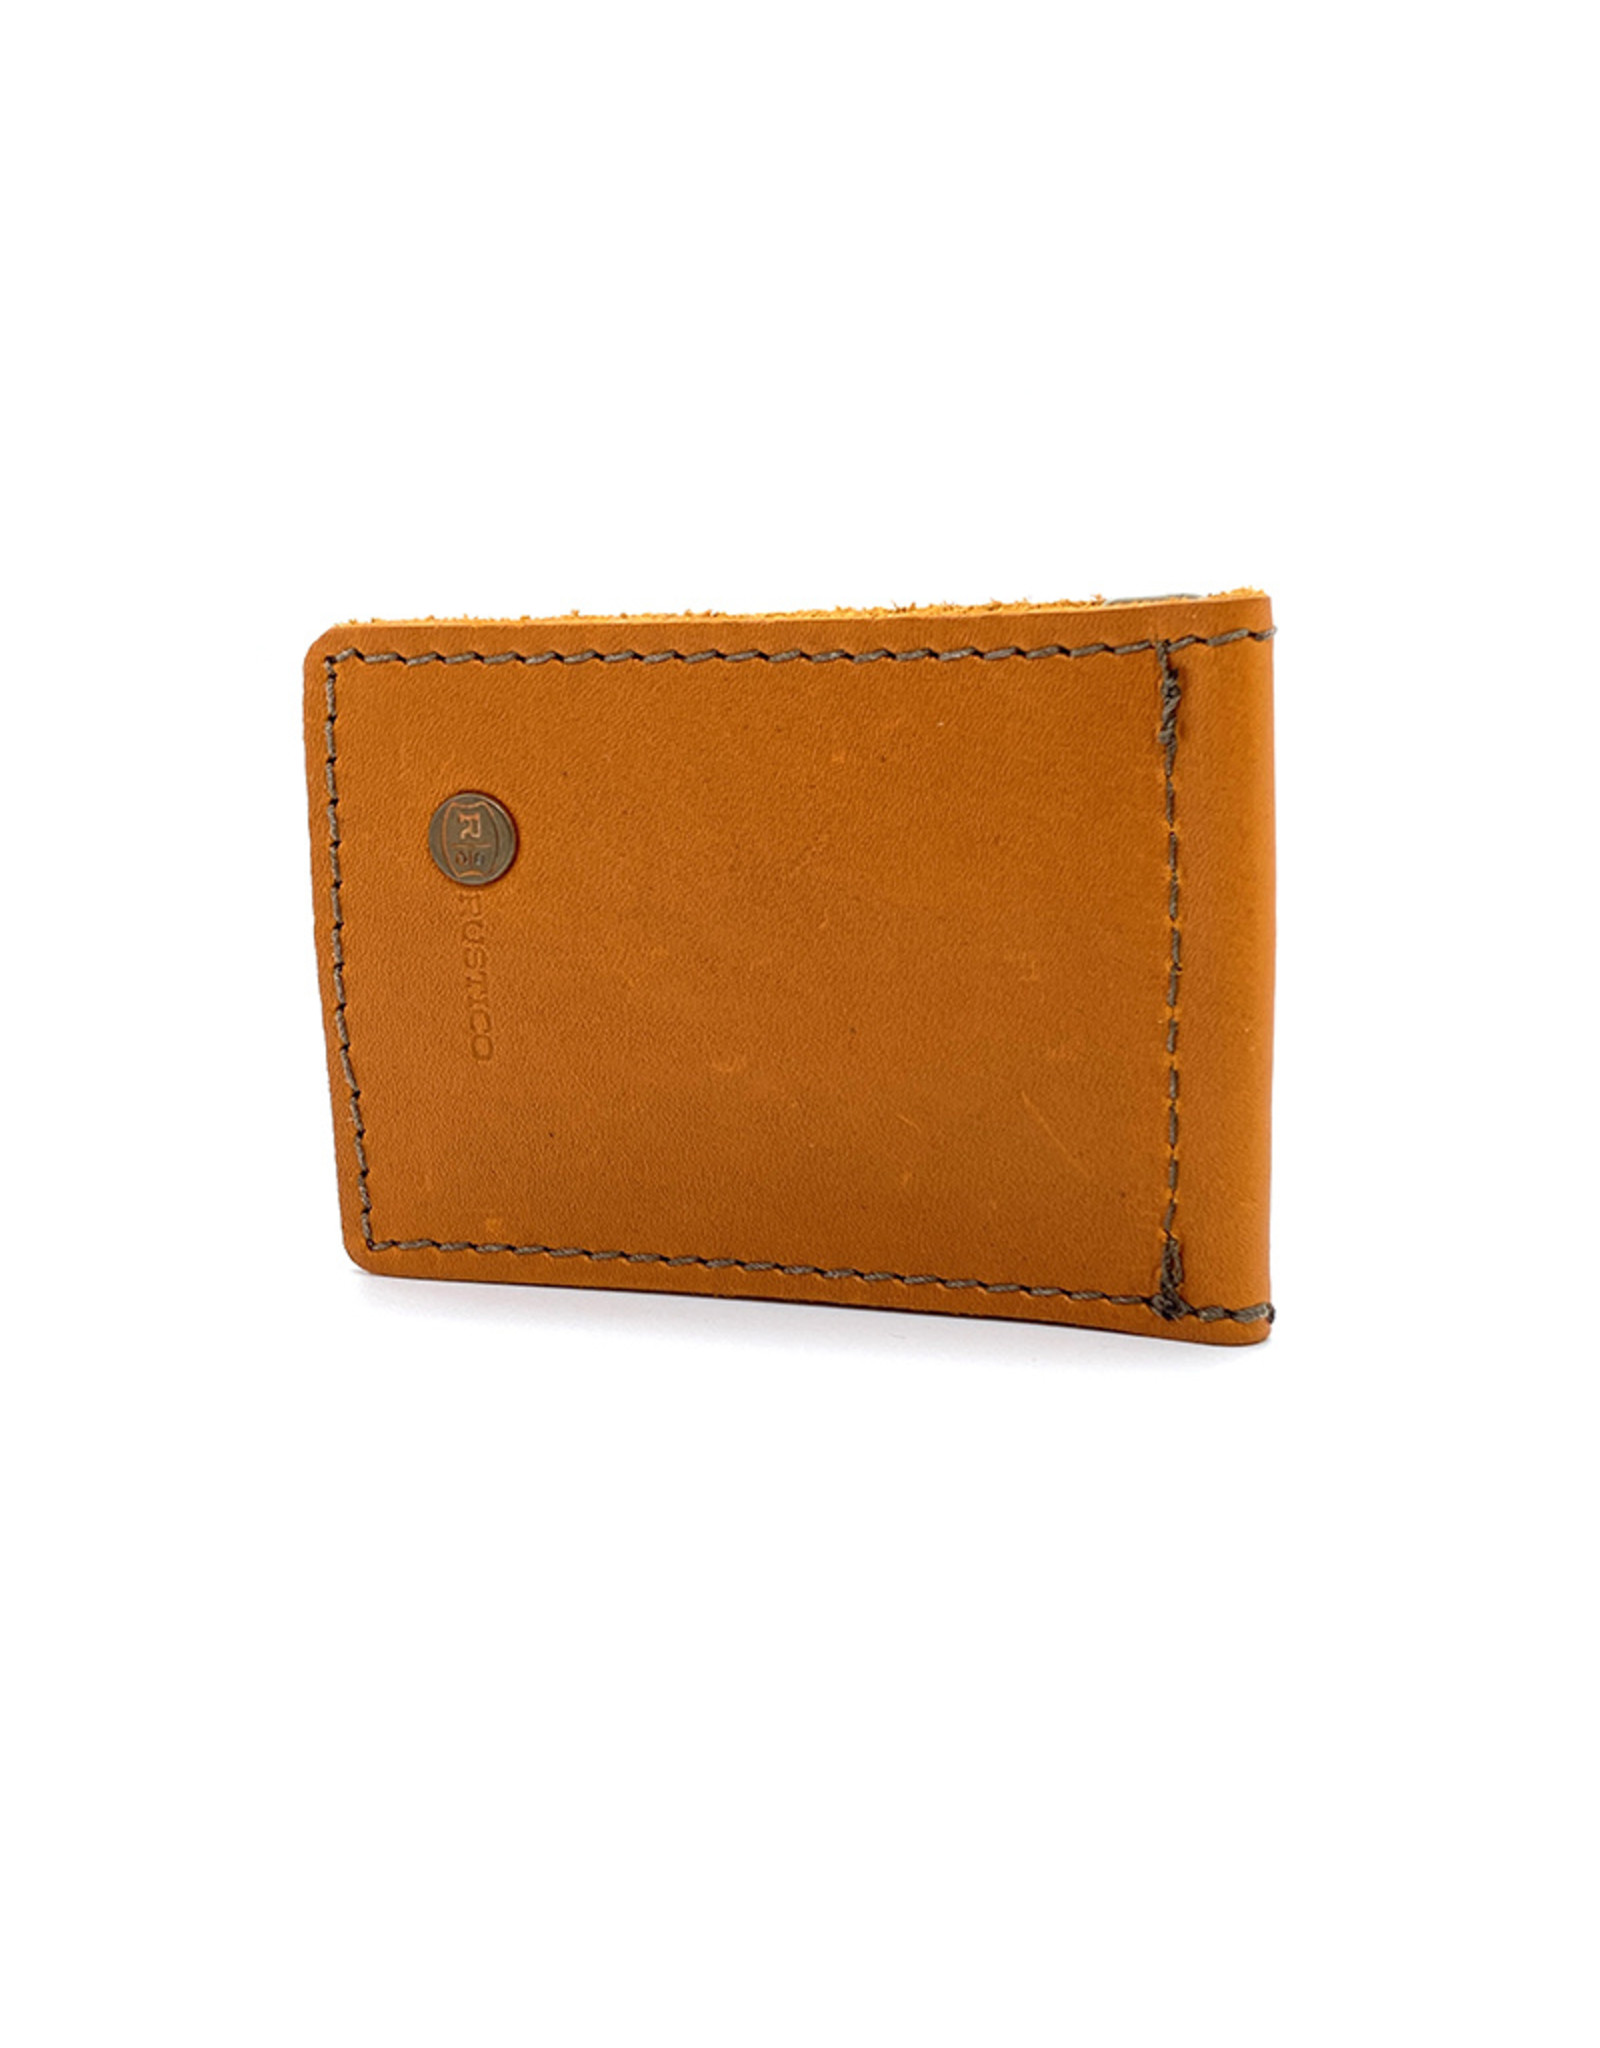 Rustico Money Clip Leather Wallets by Rustico